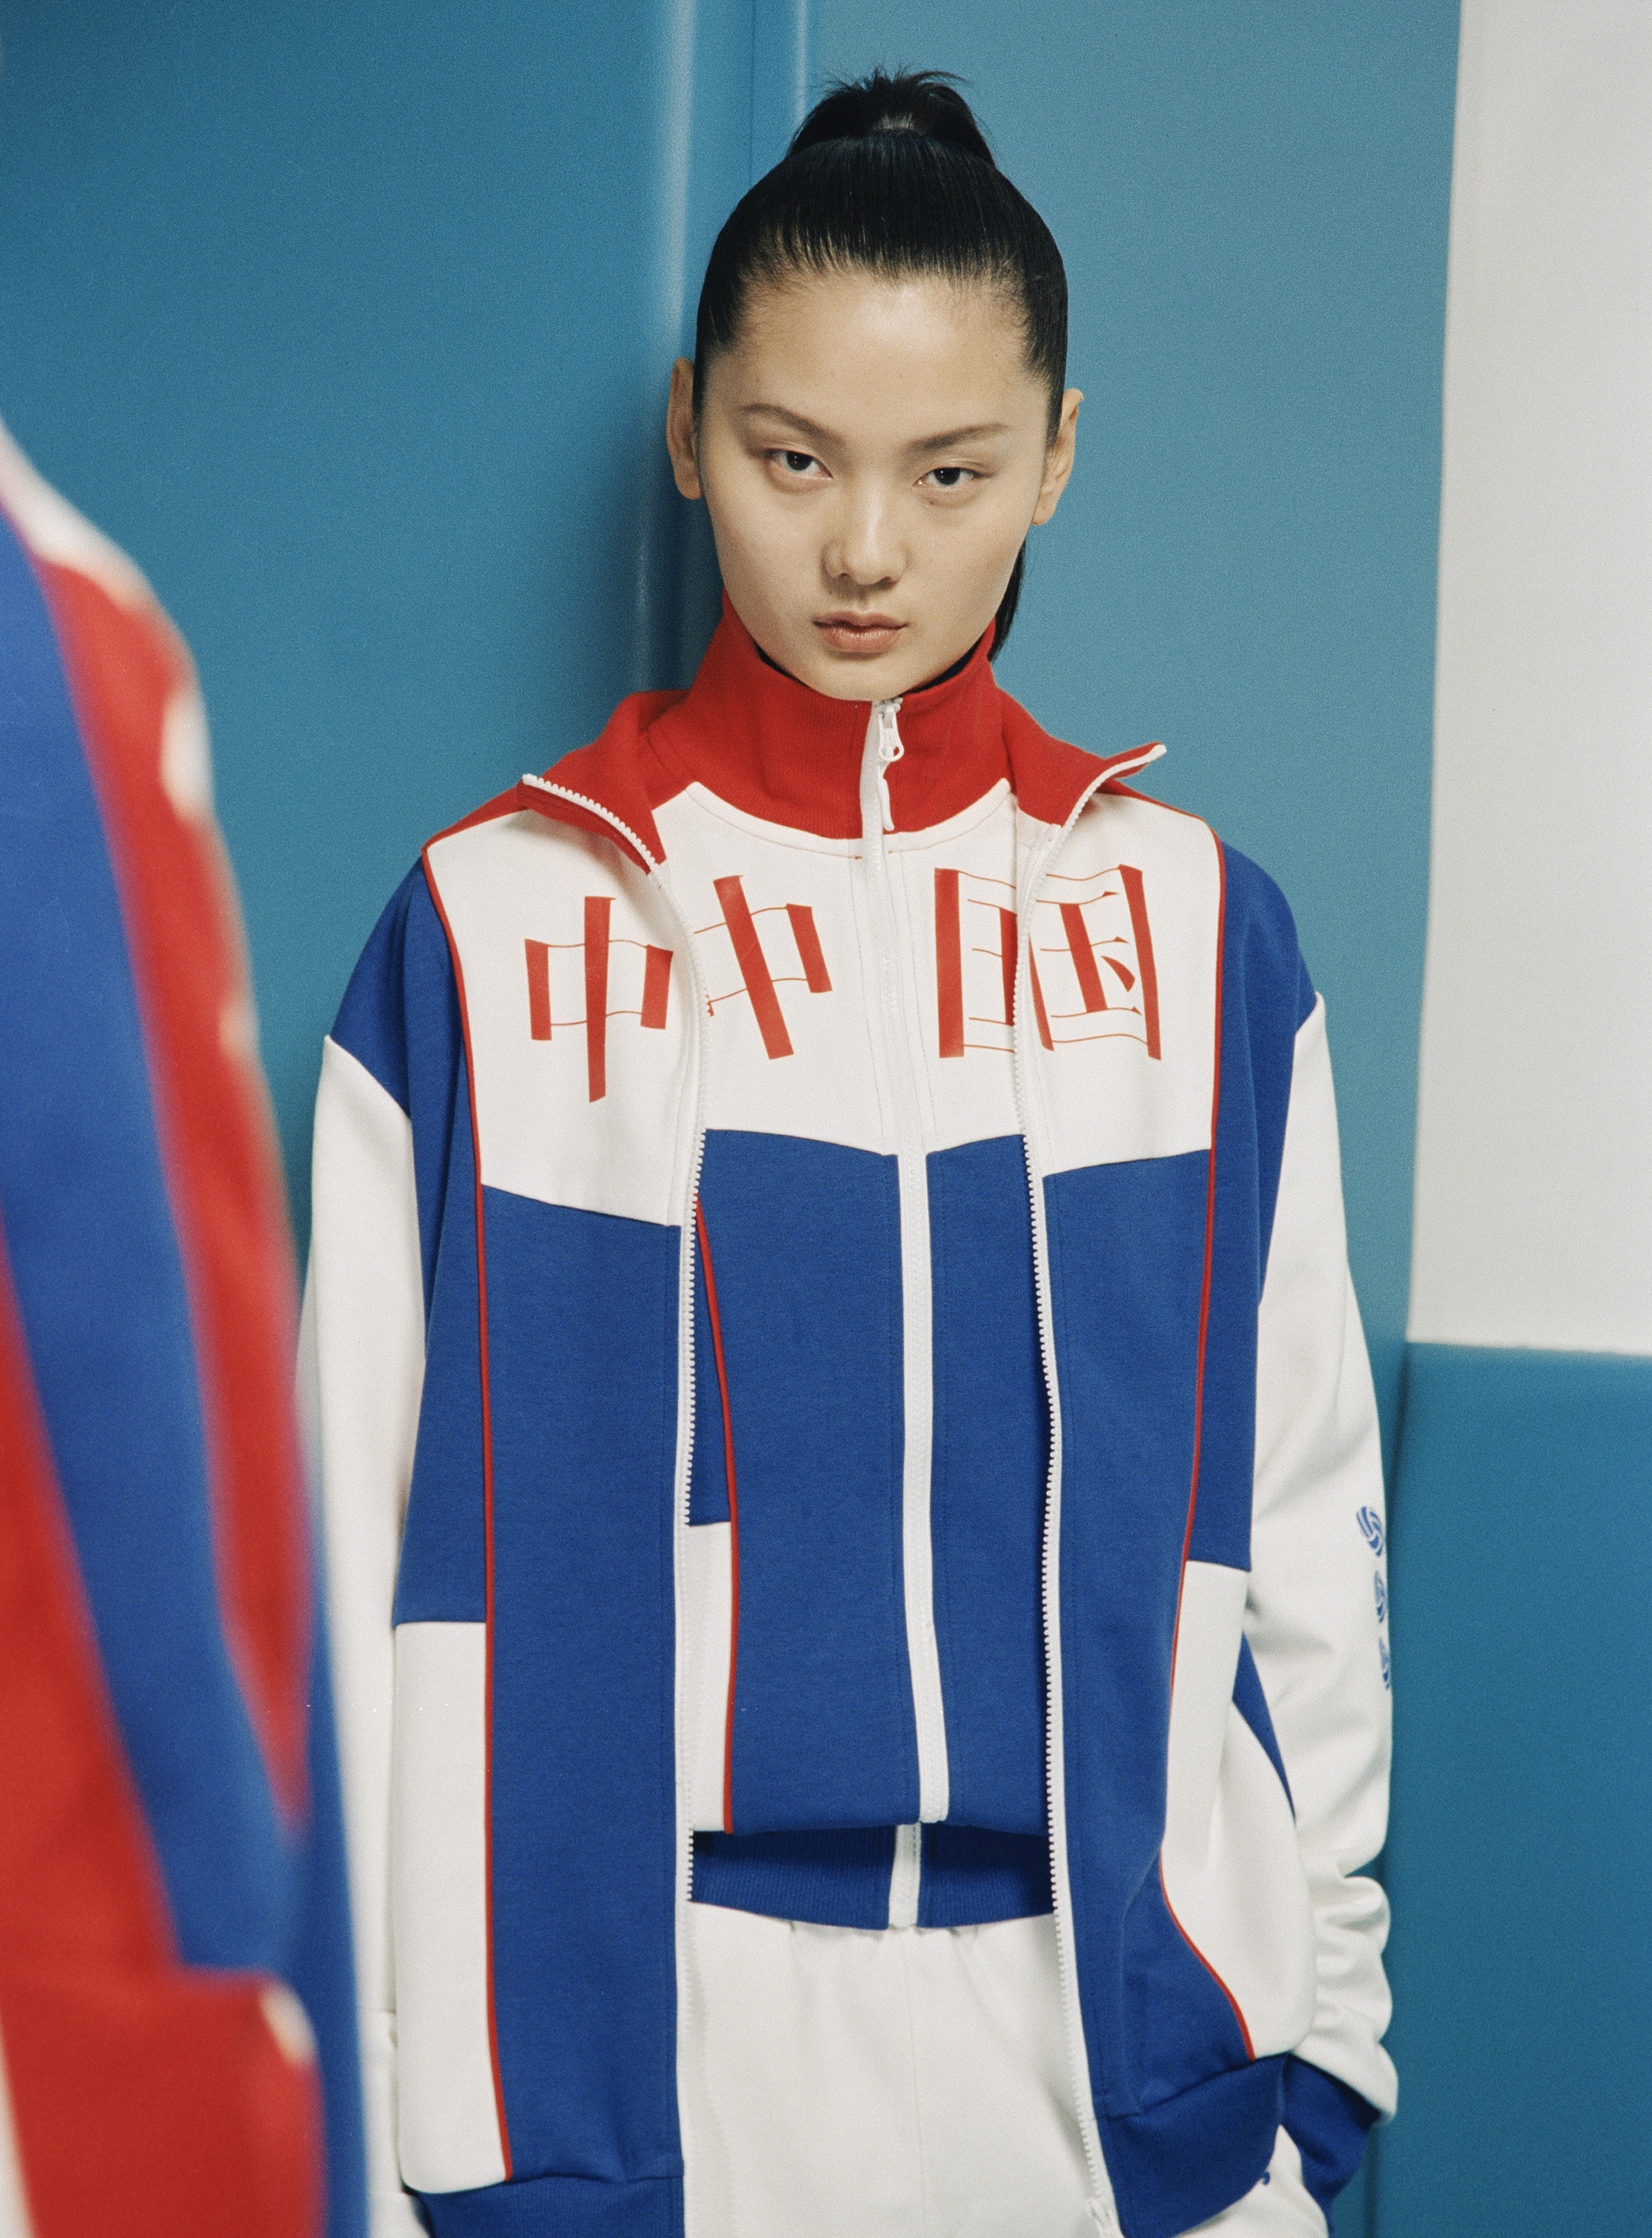 光明乳业携手中国设计师 CHEN PENG 打造「光明女排套装」